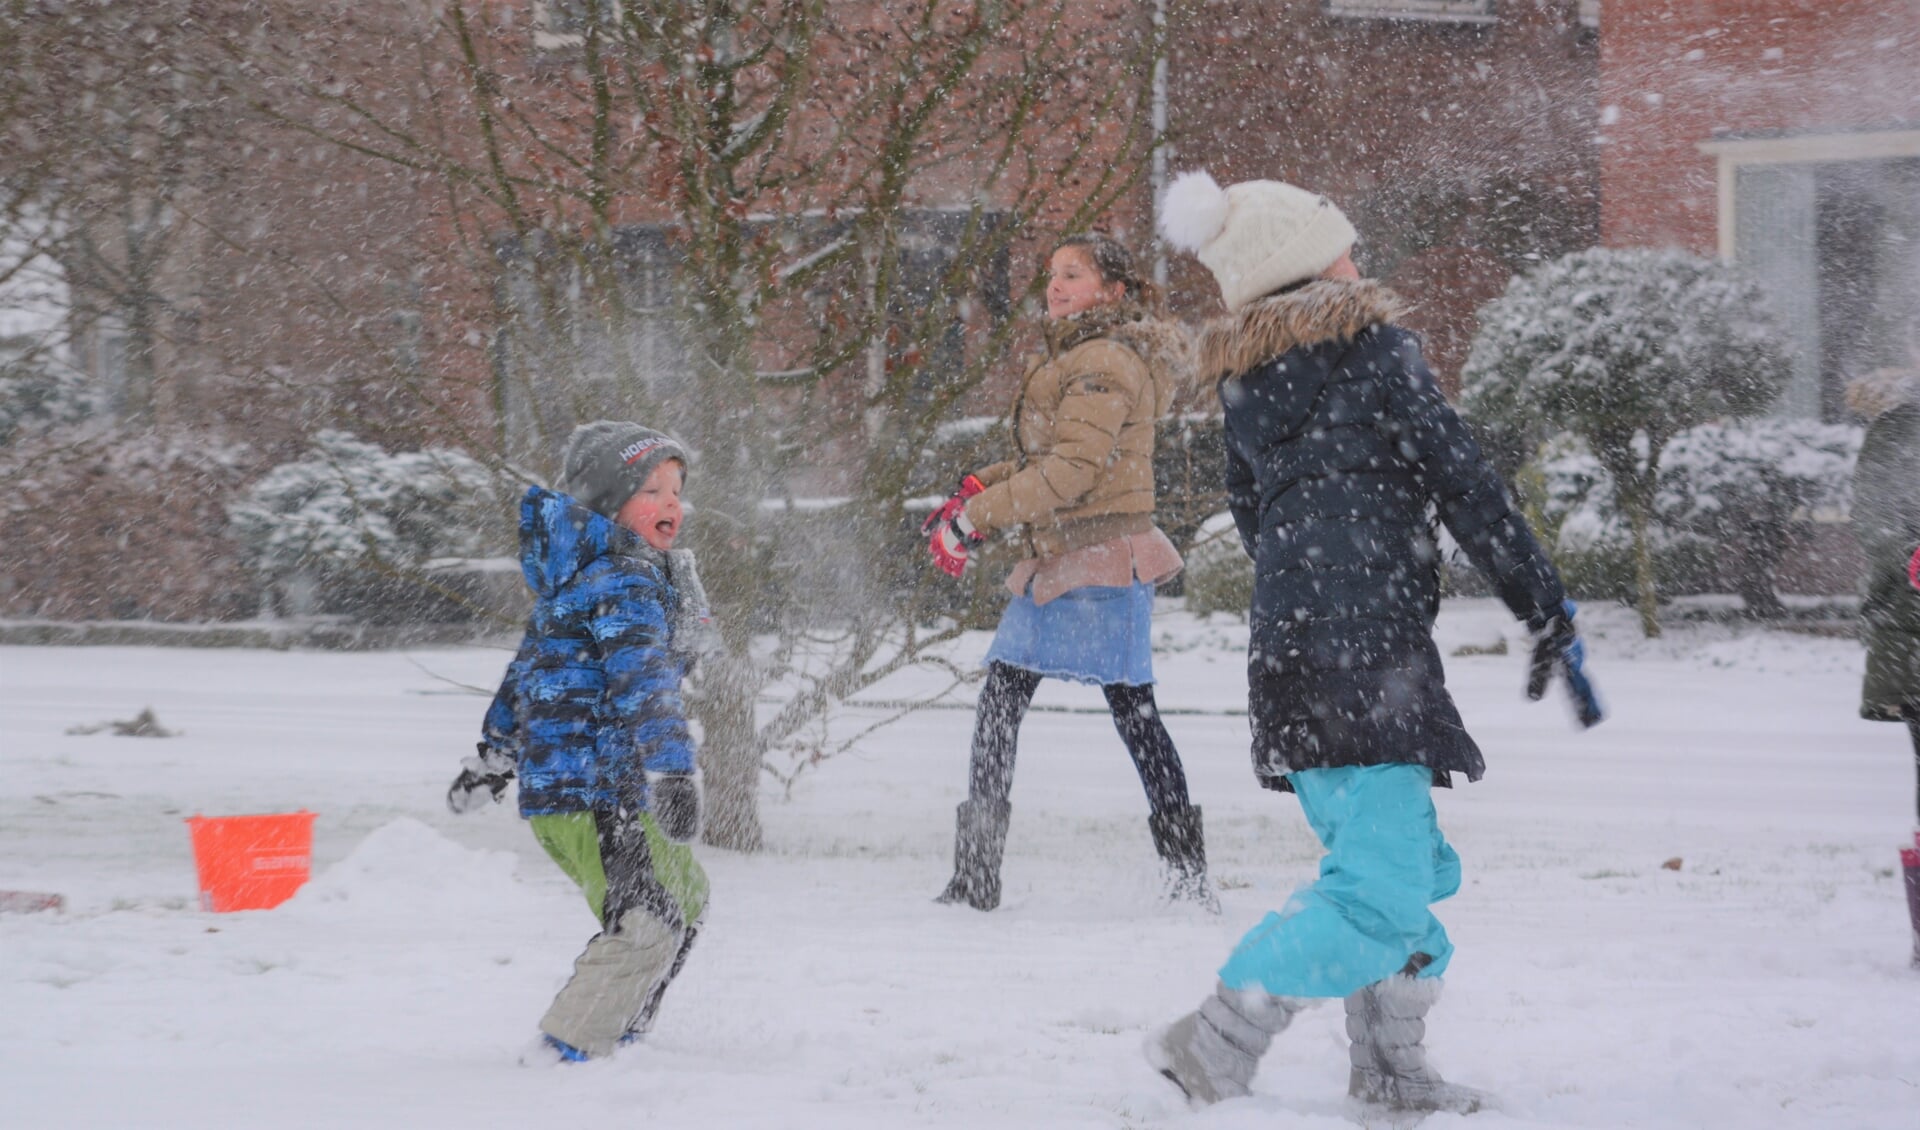 Barneveldse kinderen in de sneeuw in januari 2019.